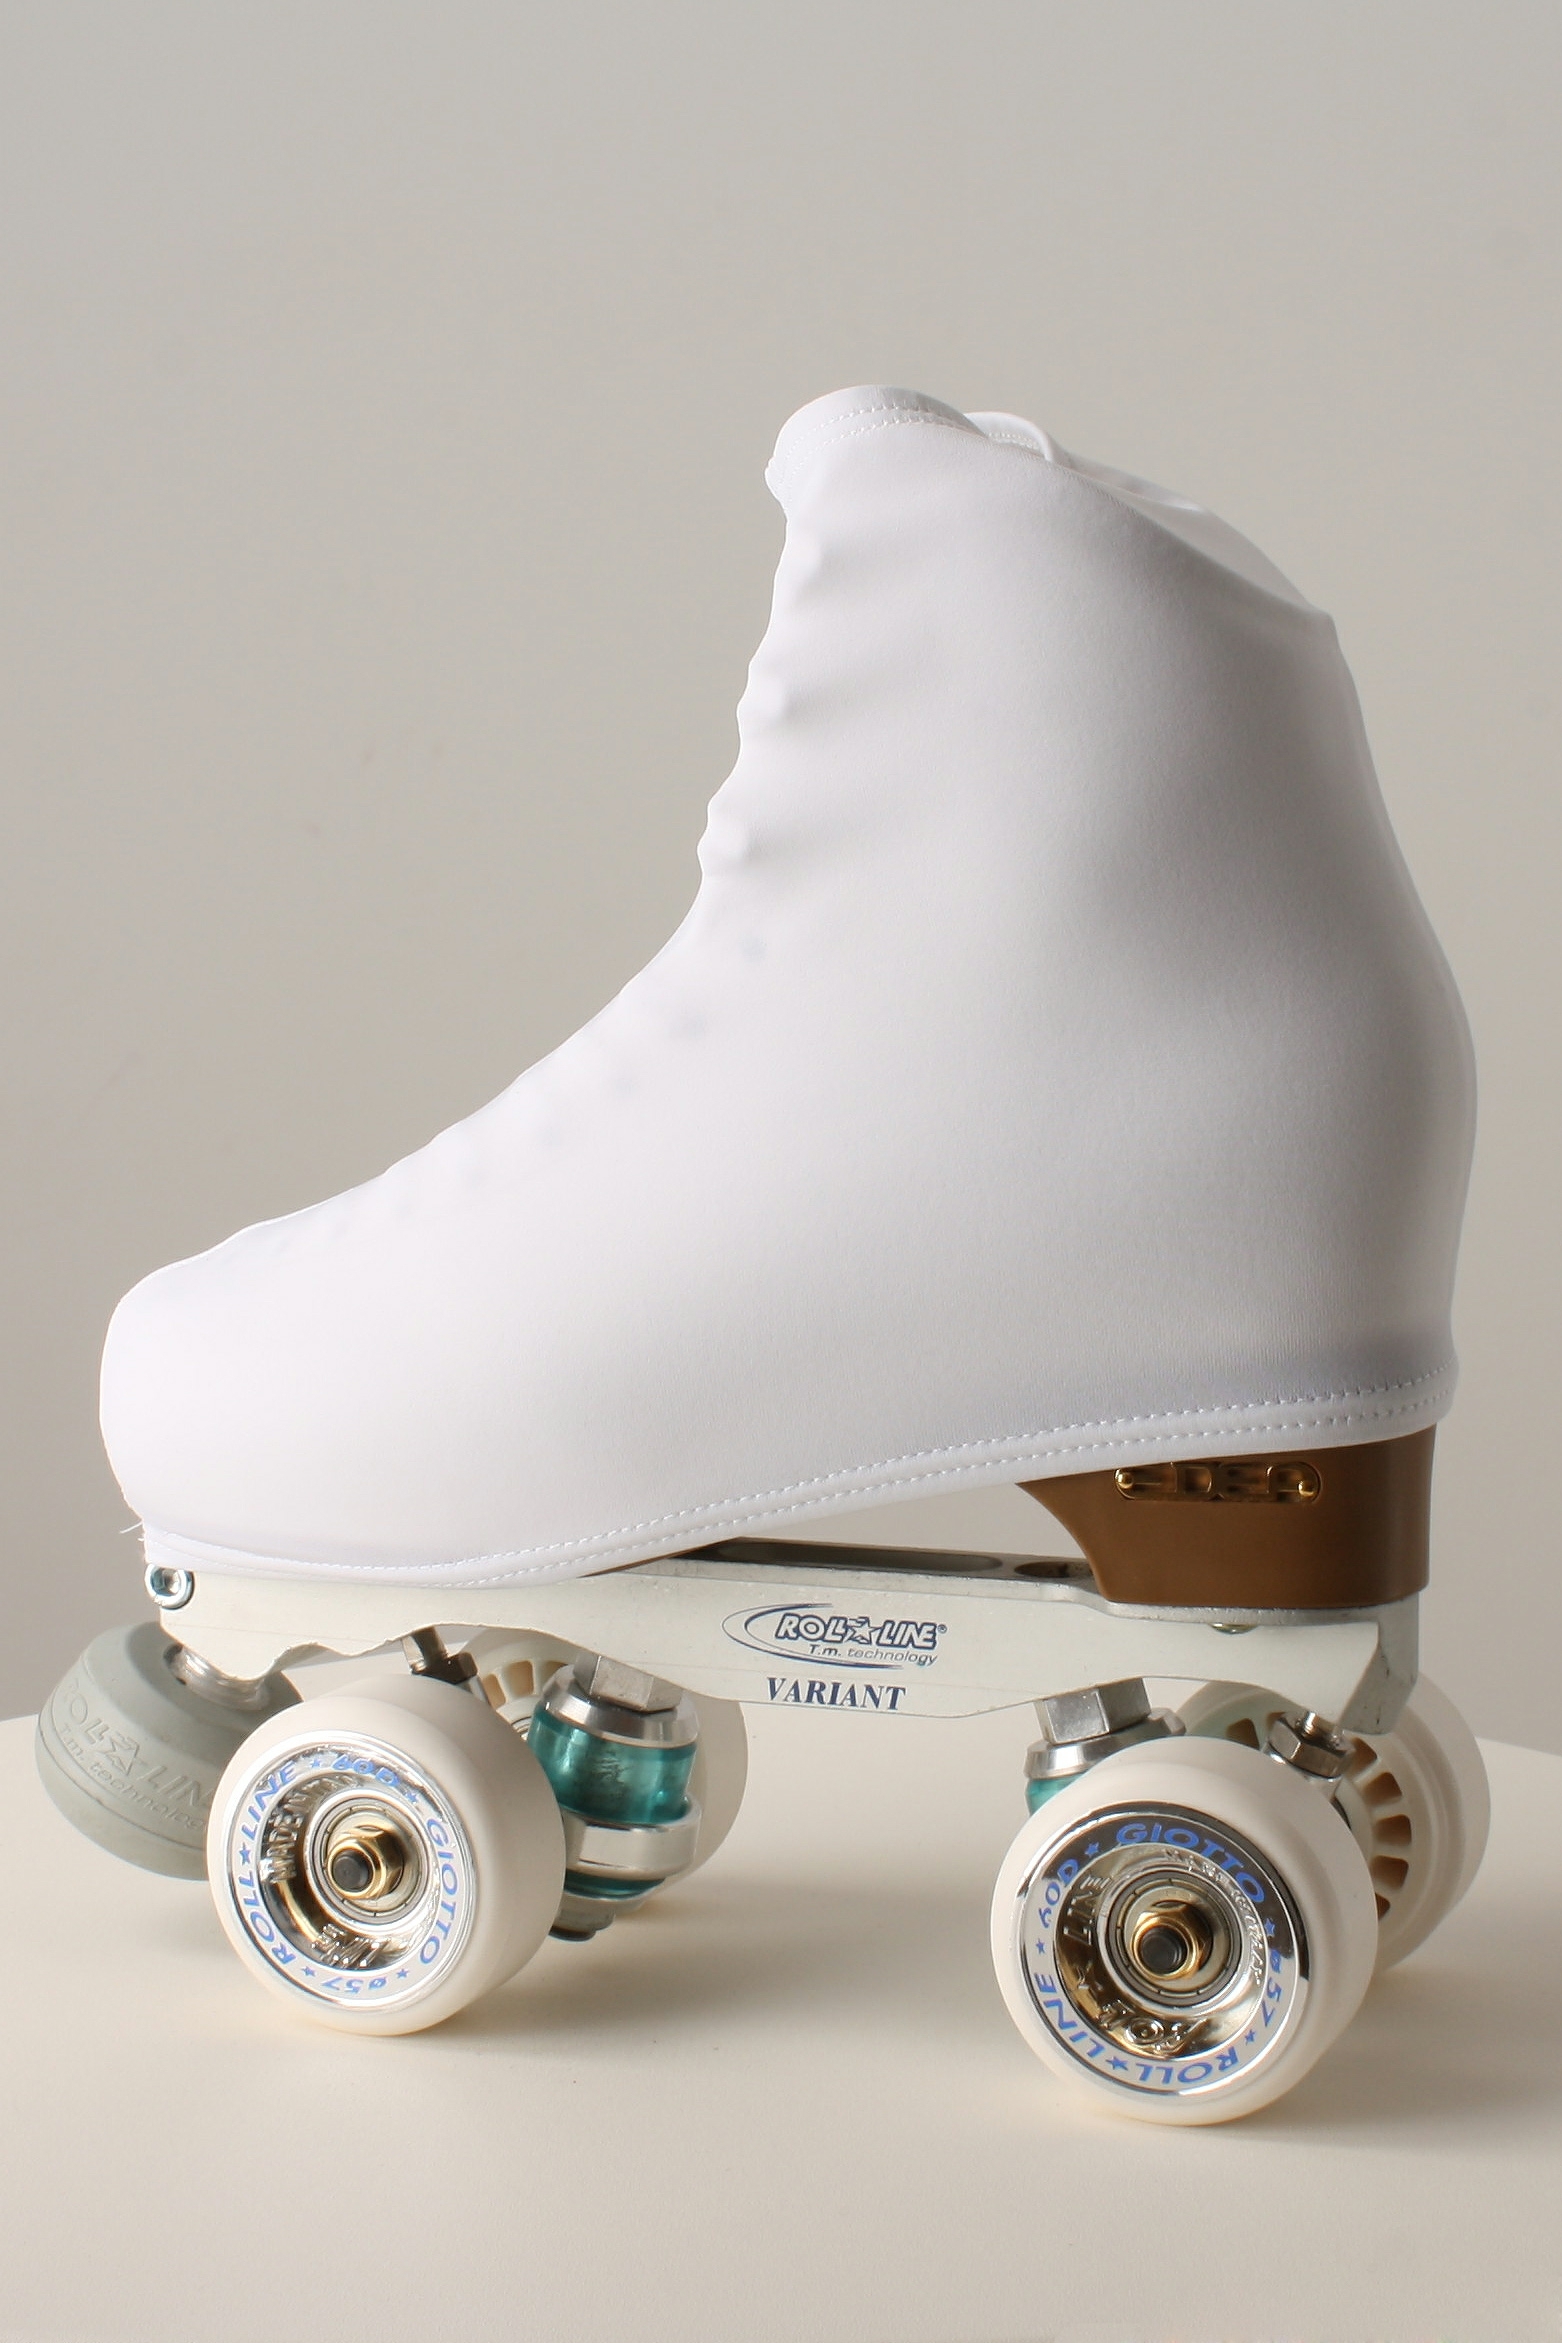 Fundas patín para patinaje ruedas , hielo , in line